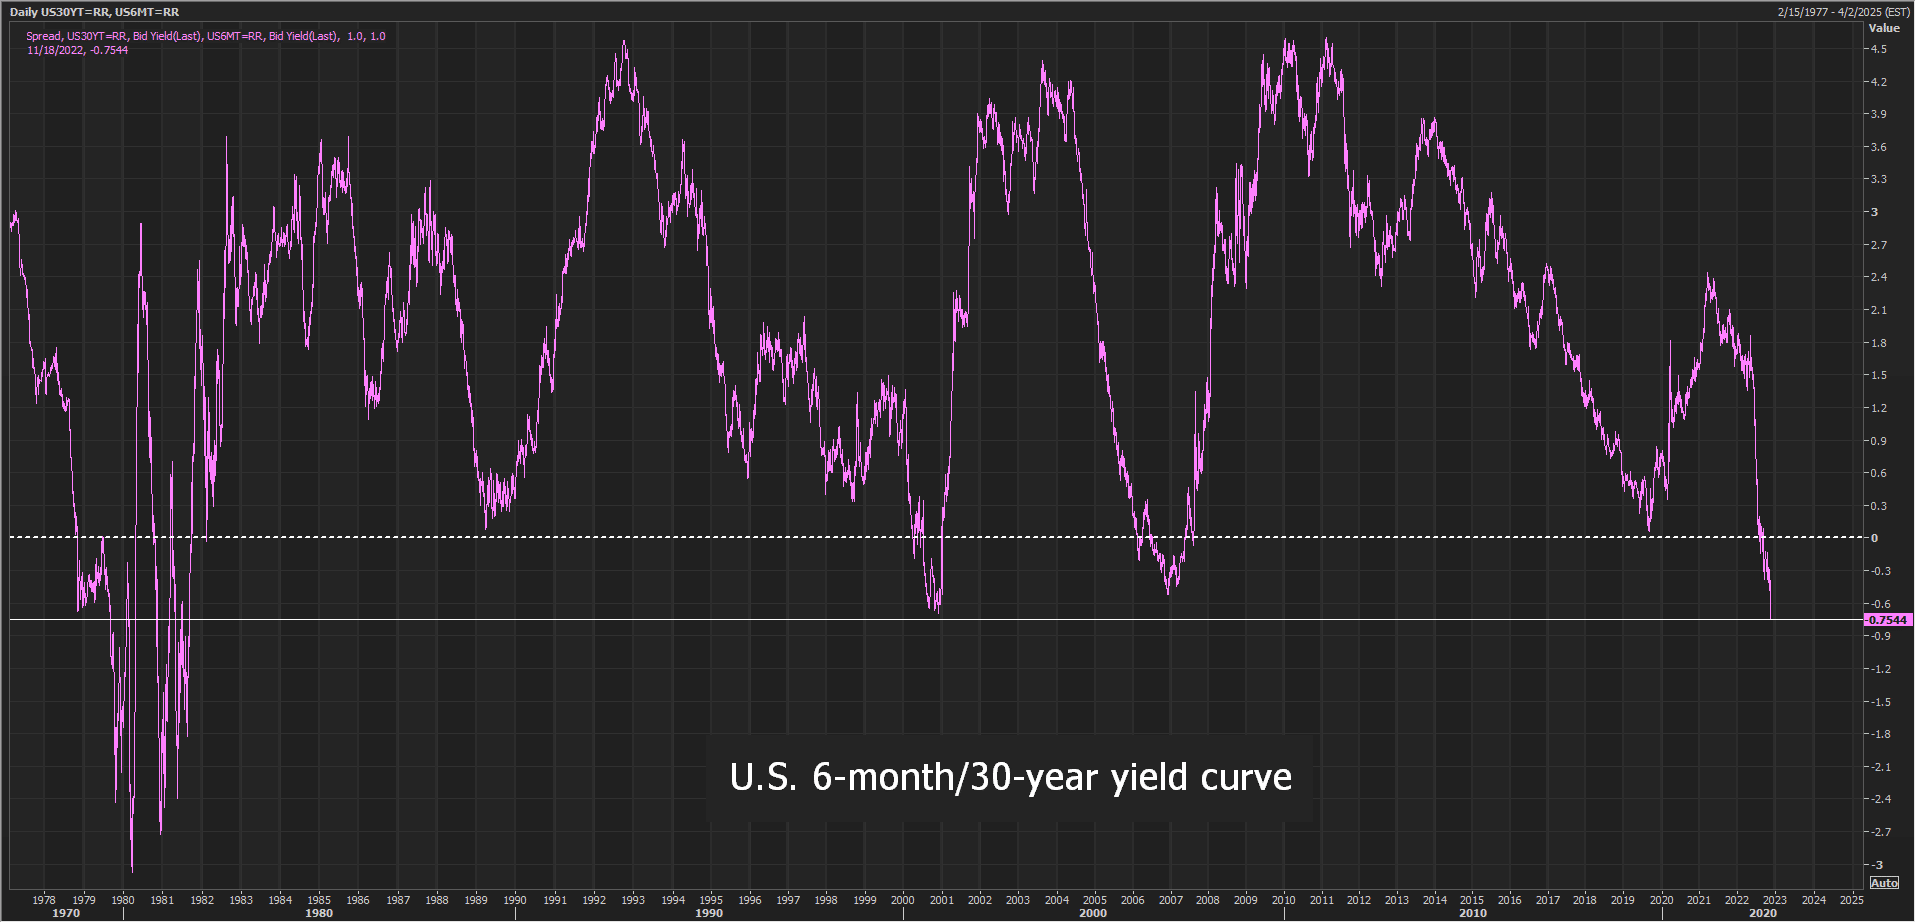 منحنی بازده 6 ماهه / 30 ساله ایالات متحده